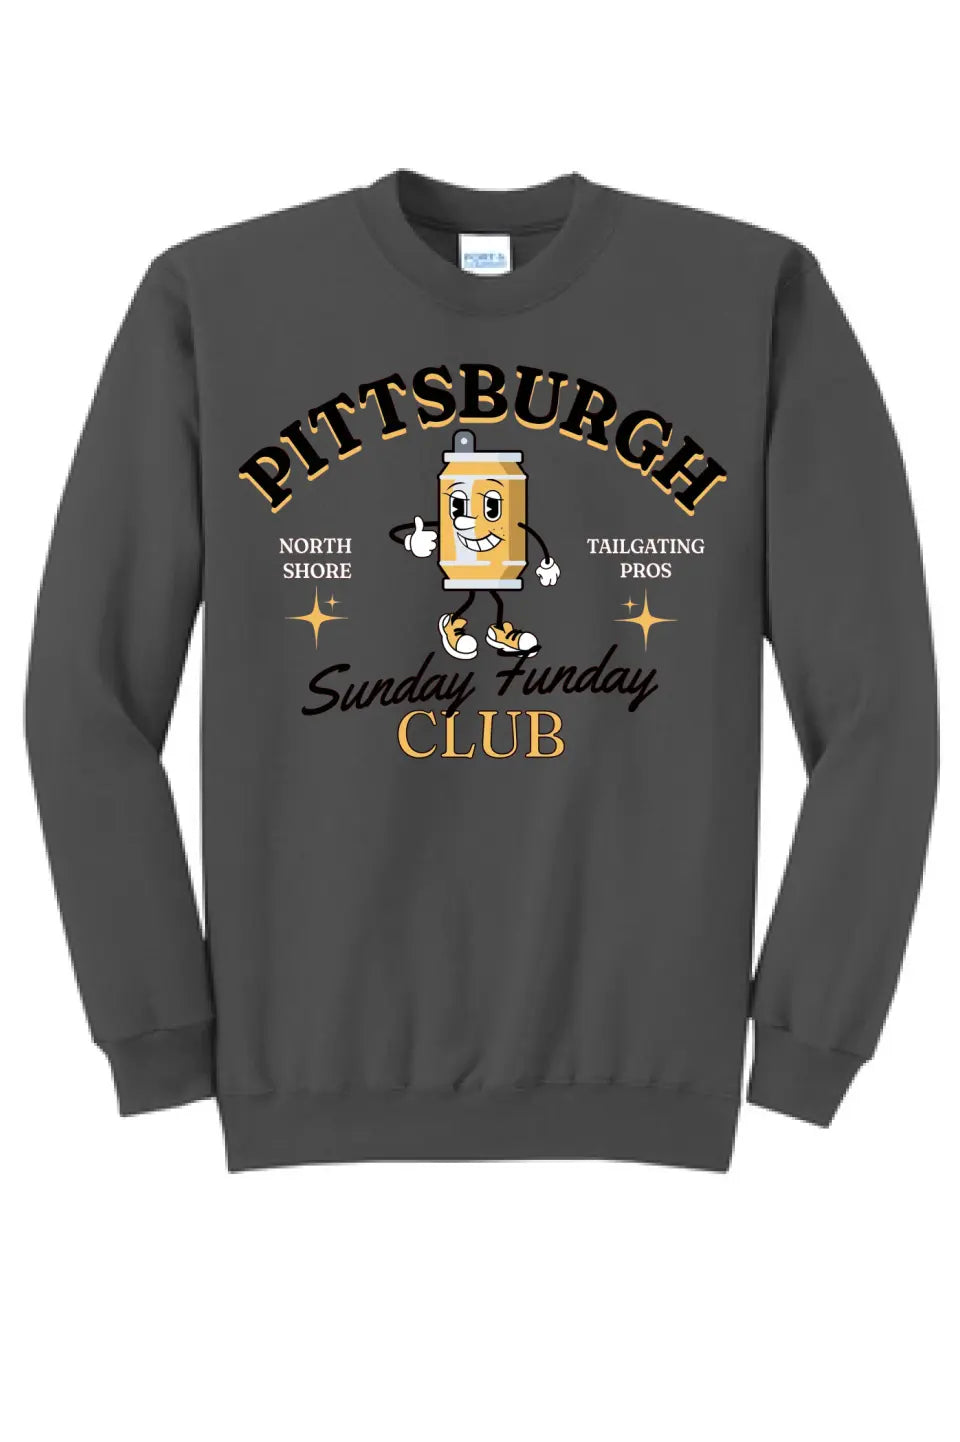 Sunday Funday Club- Long Sleeve Core Blend Crewneck Sweatshirt